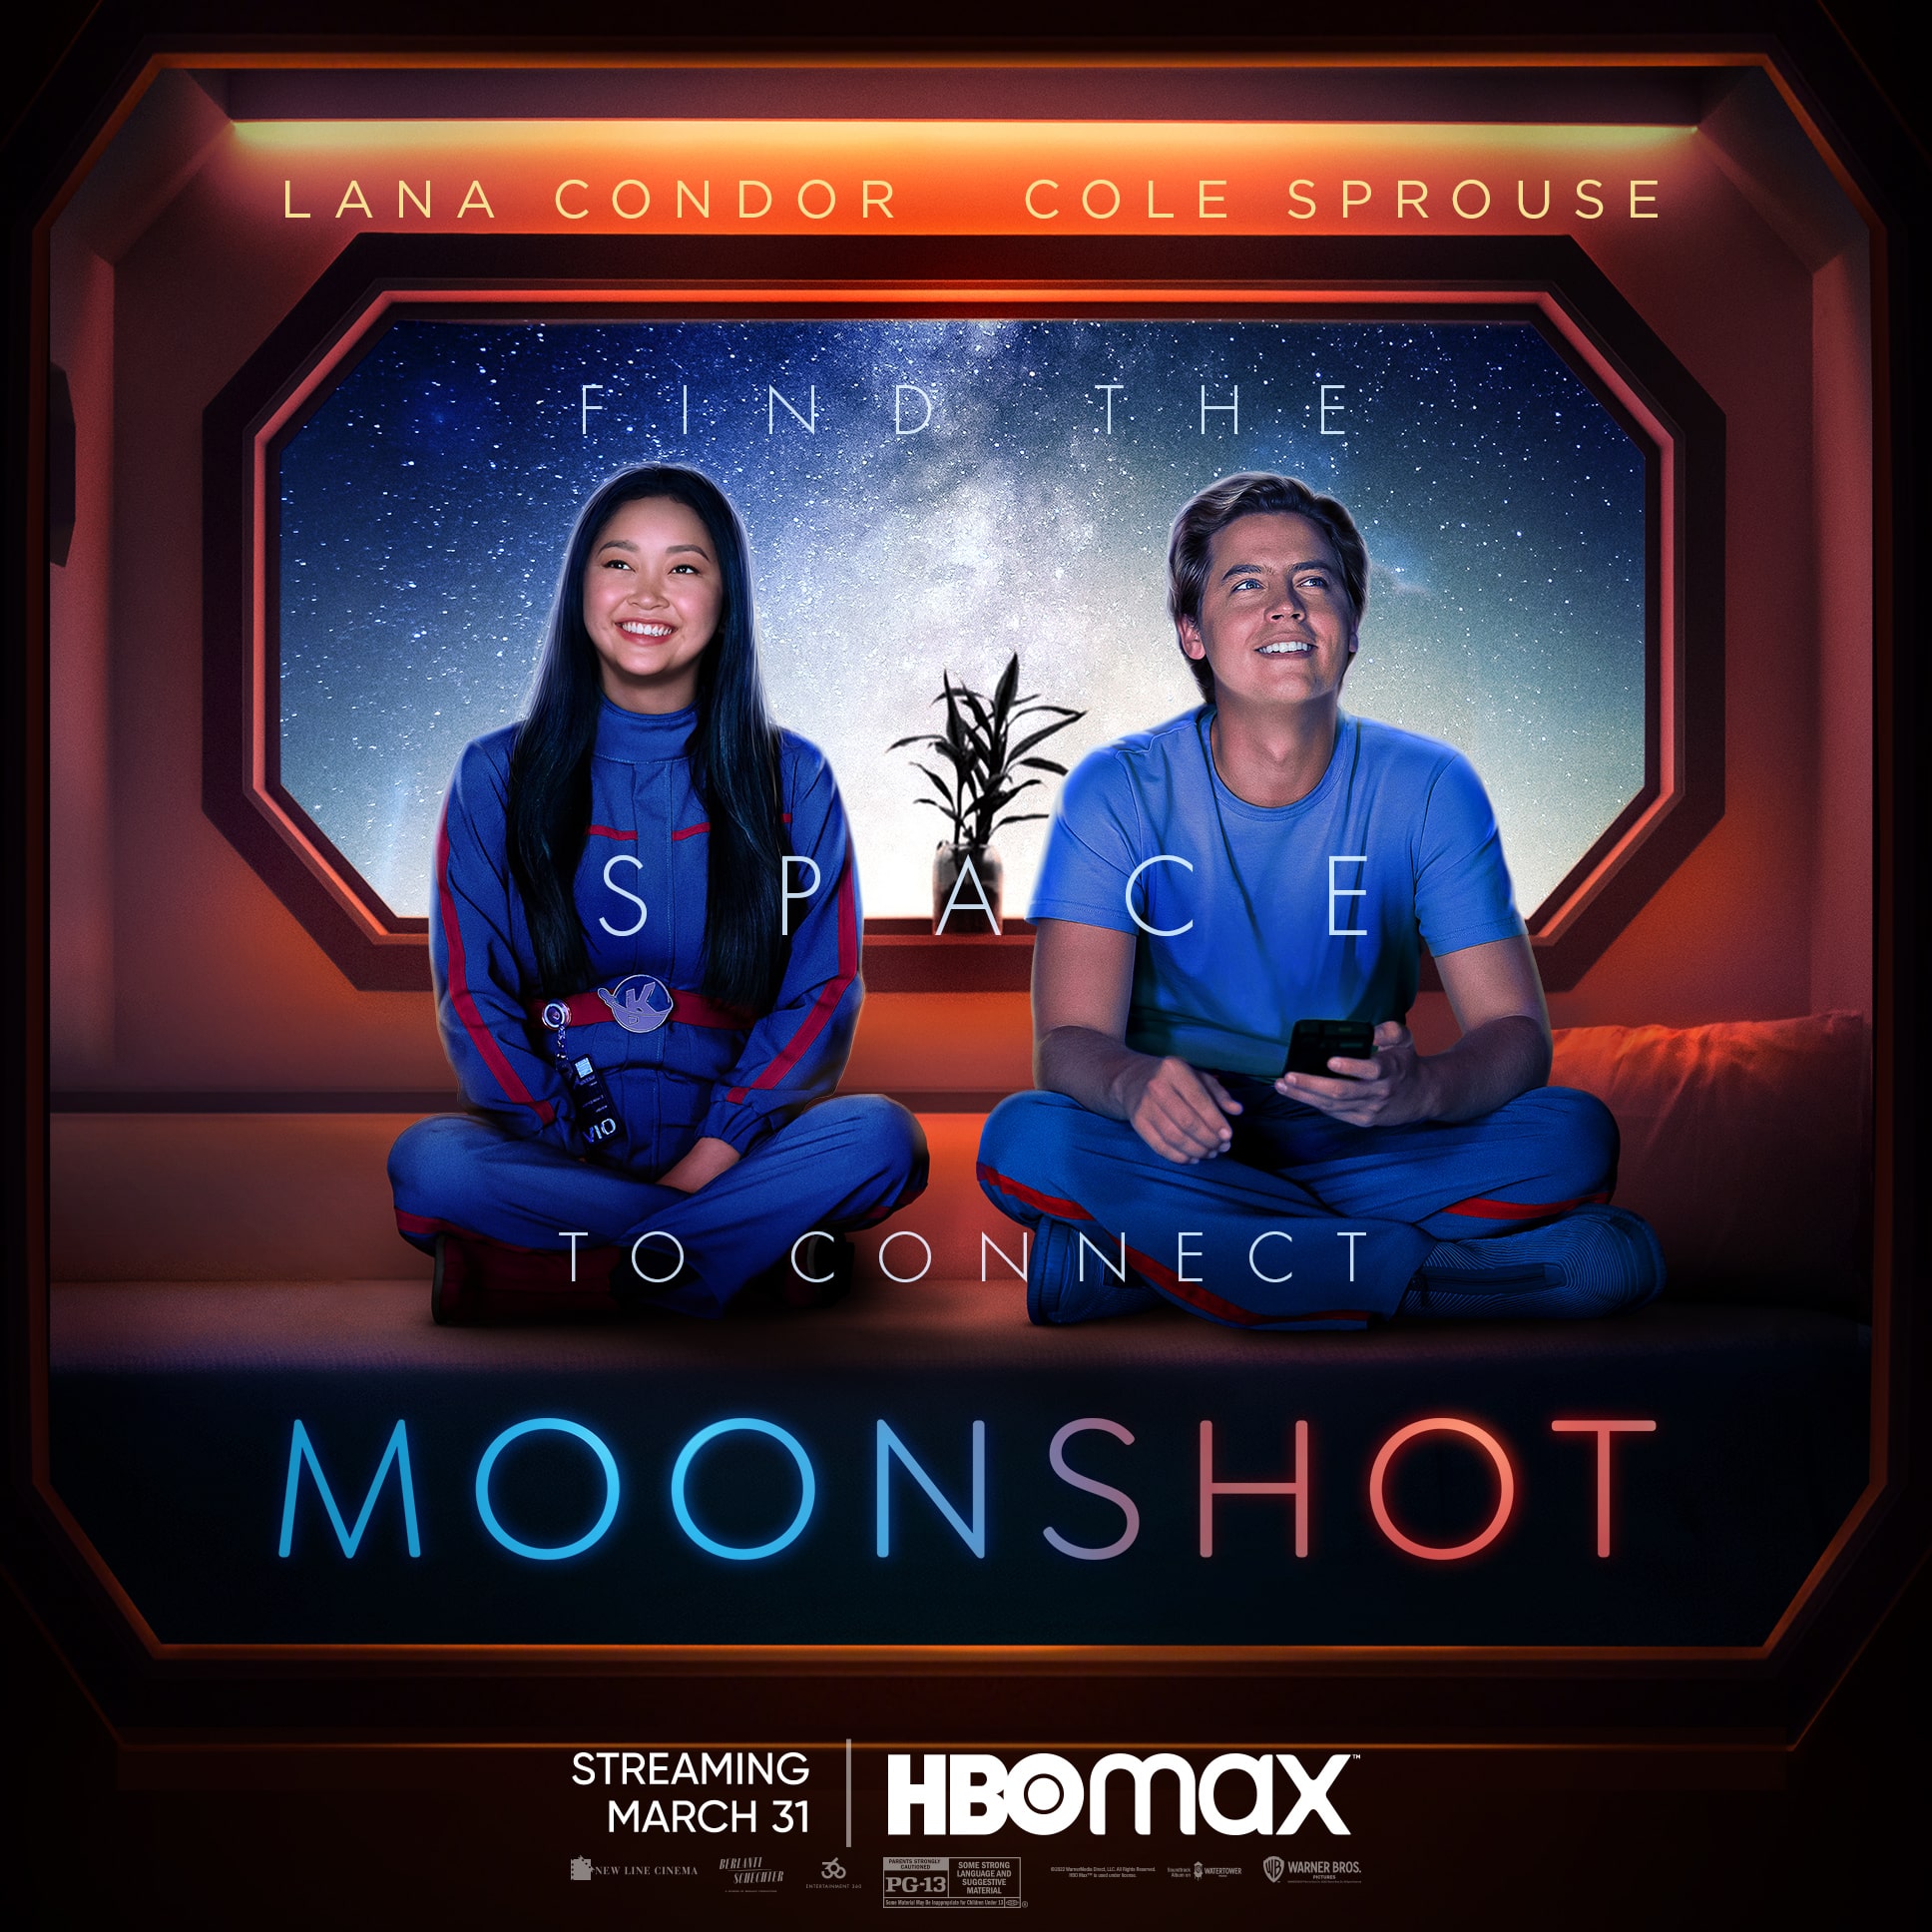 Moonshot: Lana Condor y Cole Sprouse estrenan peli de romance en el espacio